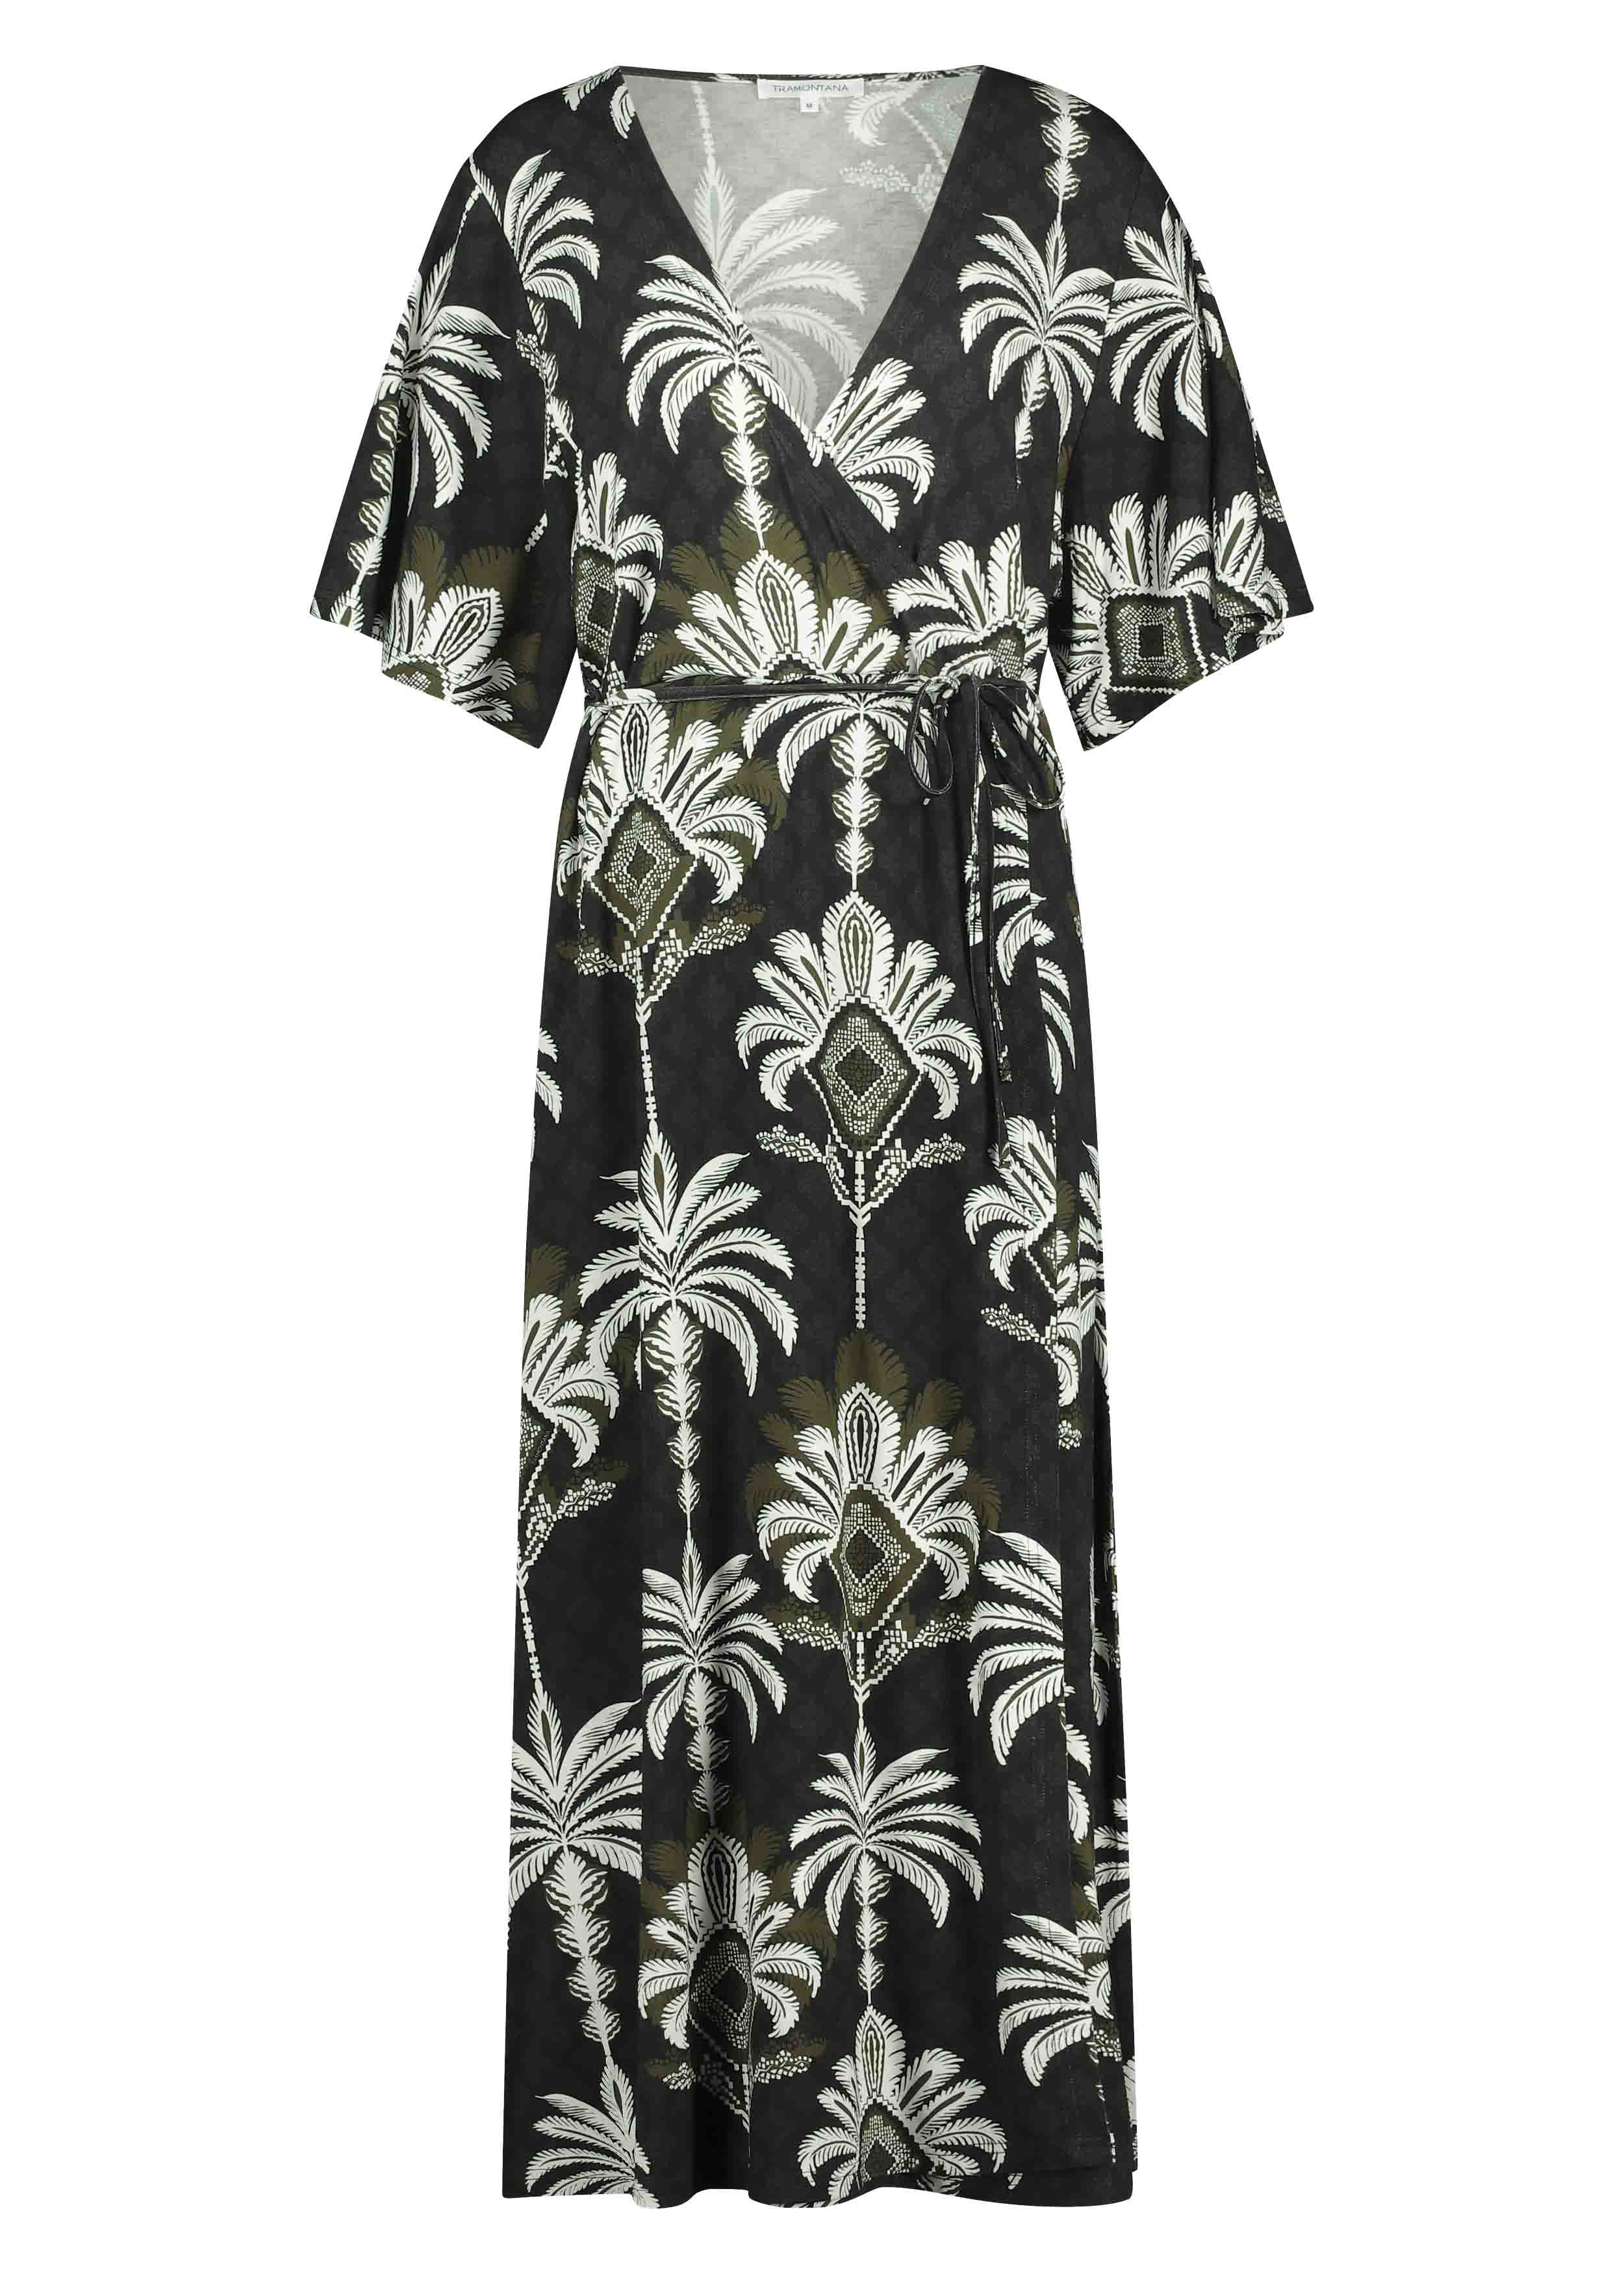 Tramontana Female Jurken D09-12-501 Dress Overlap Palm